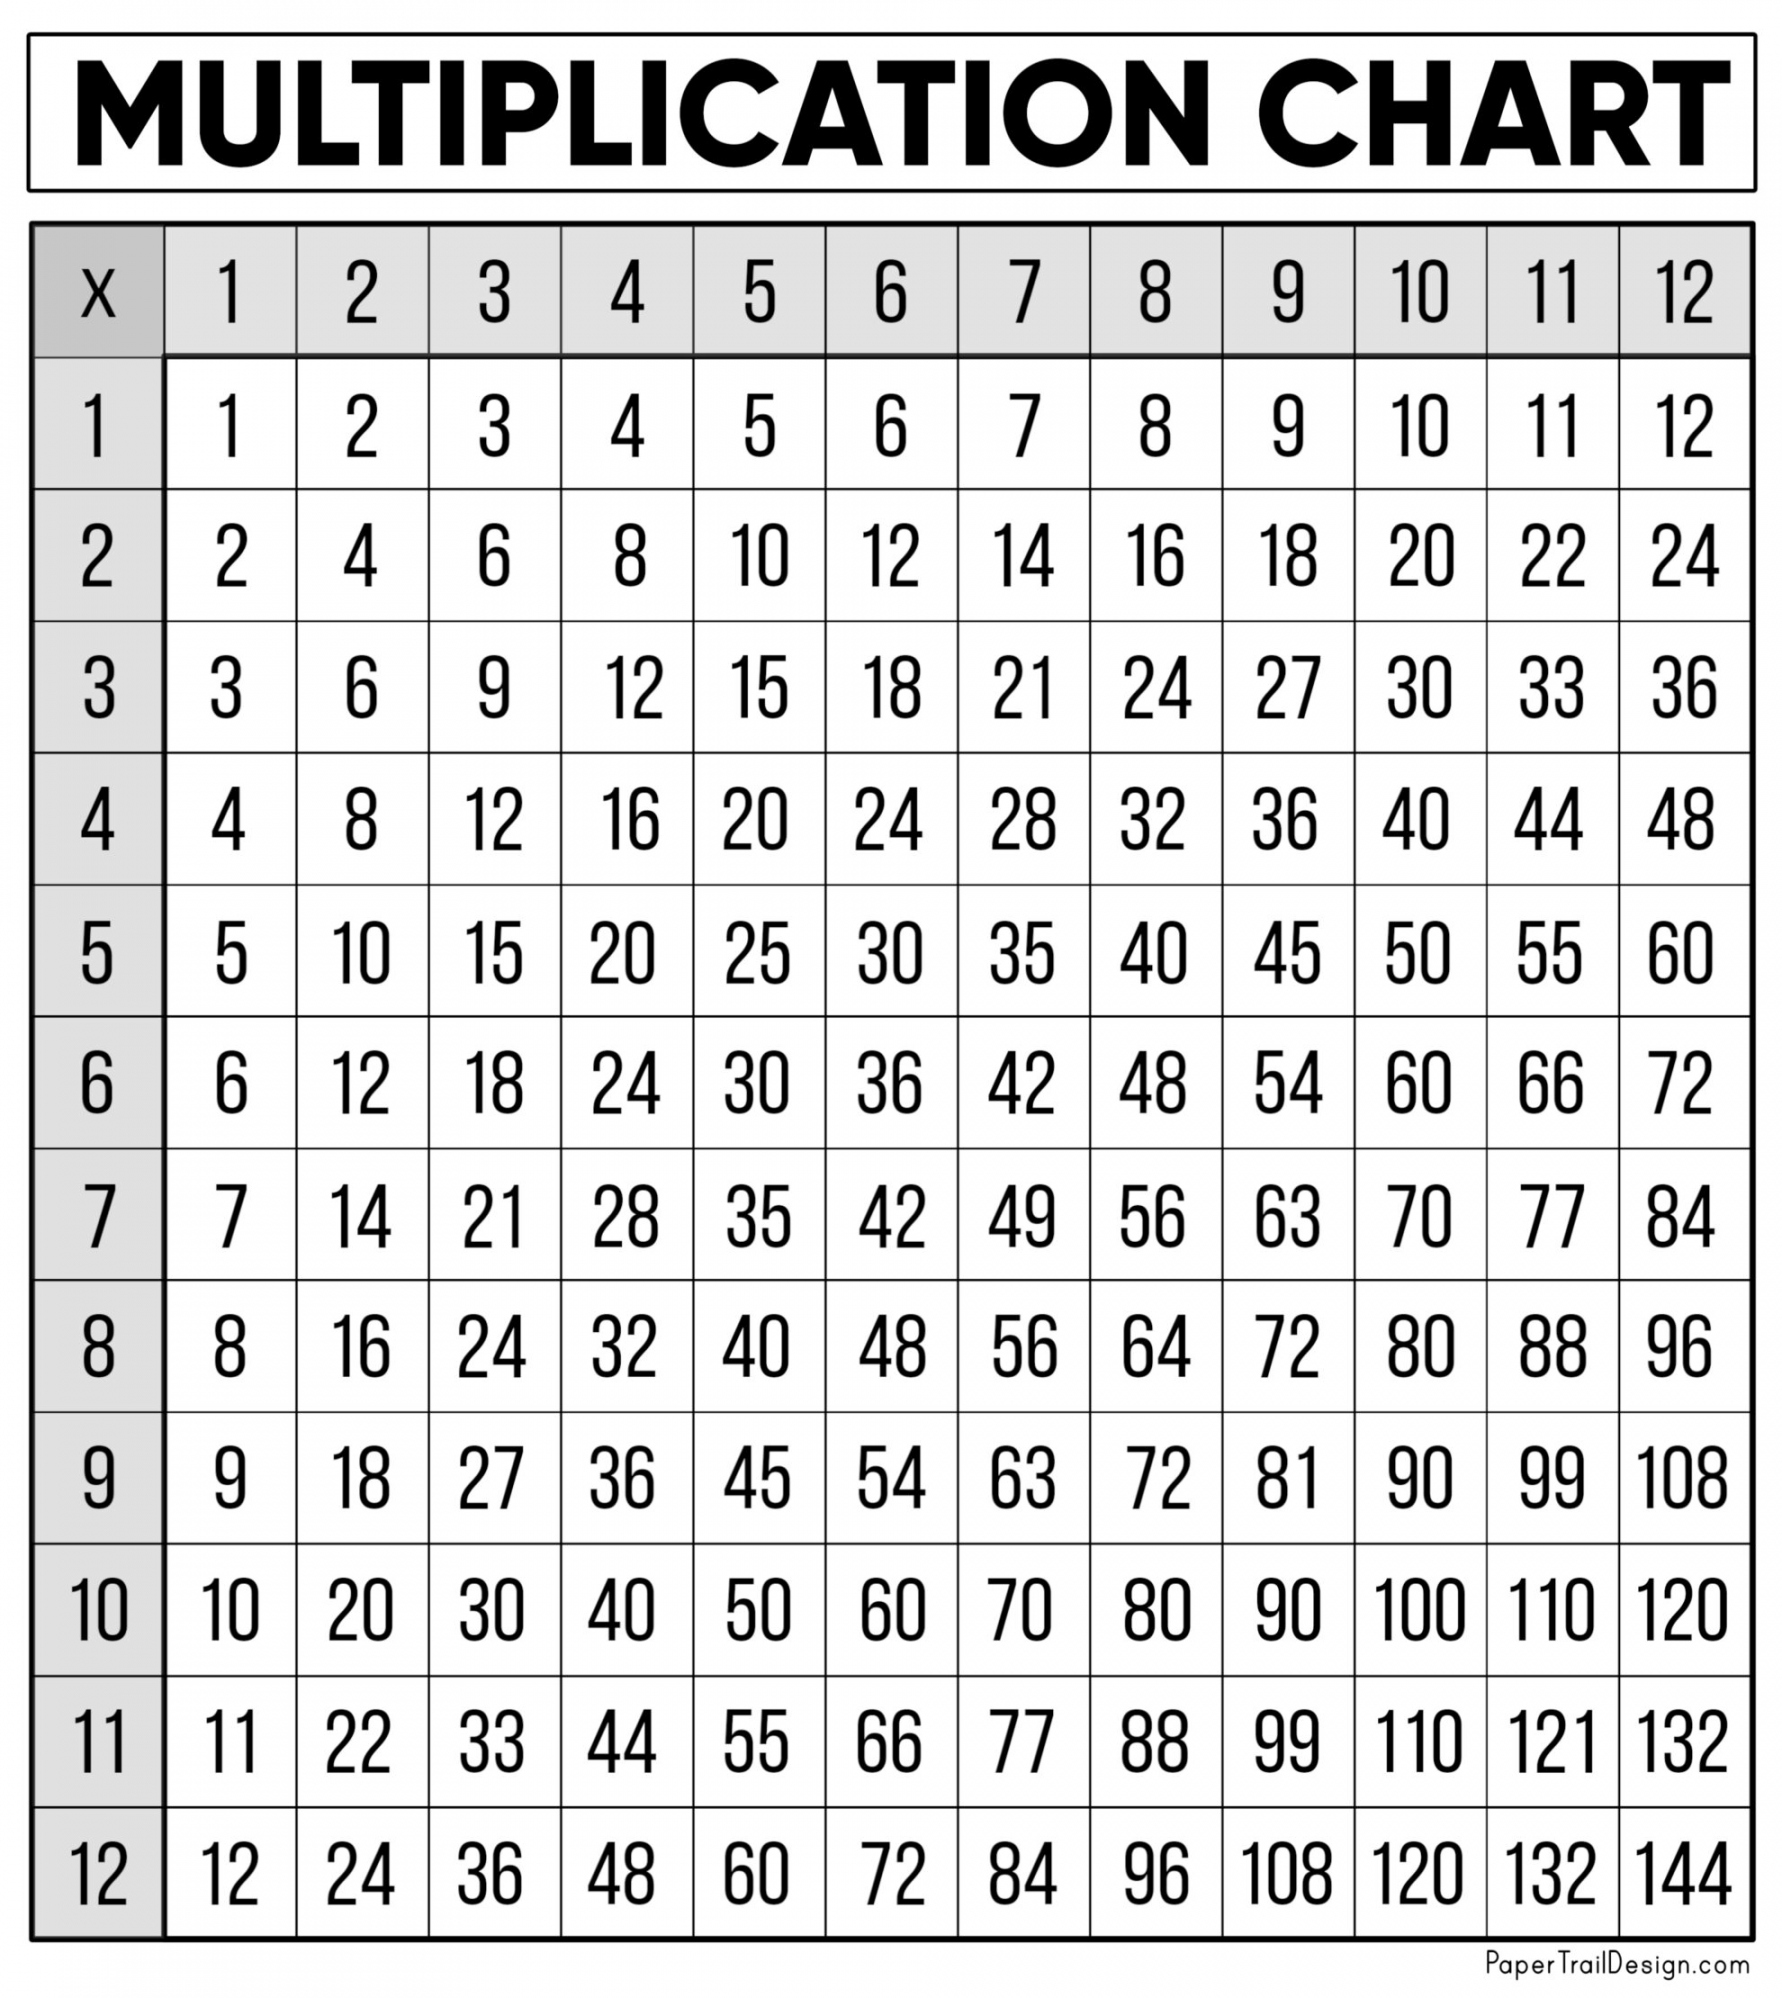 Free Multiplication Table Printable - Printable - Free Multiplication Chart Printable - Paper Trail Design